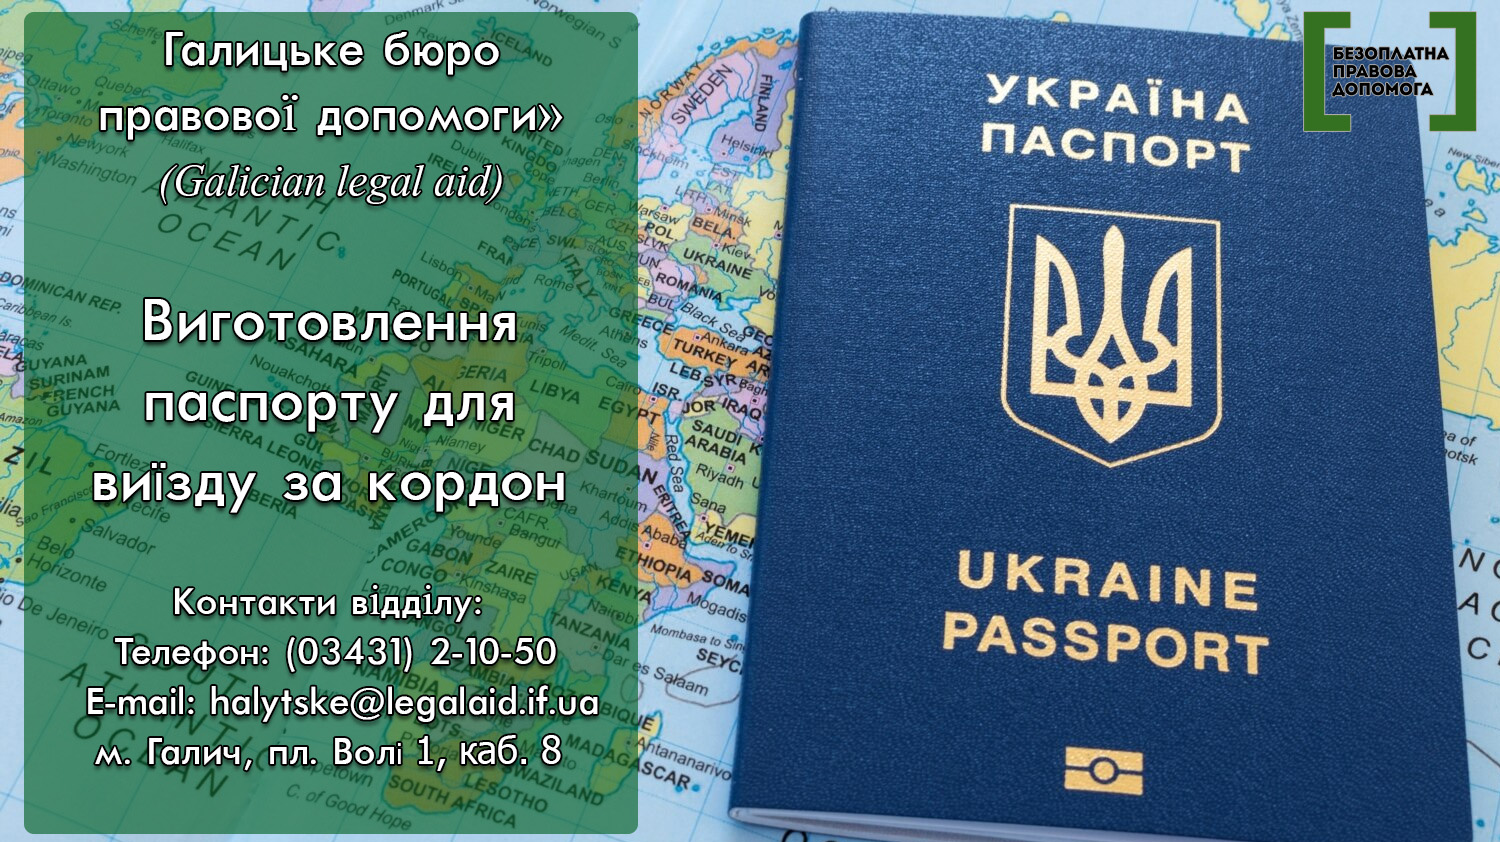 Виготовлення паспорту громадянина України для виїзду за кордон